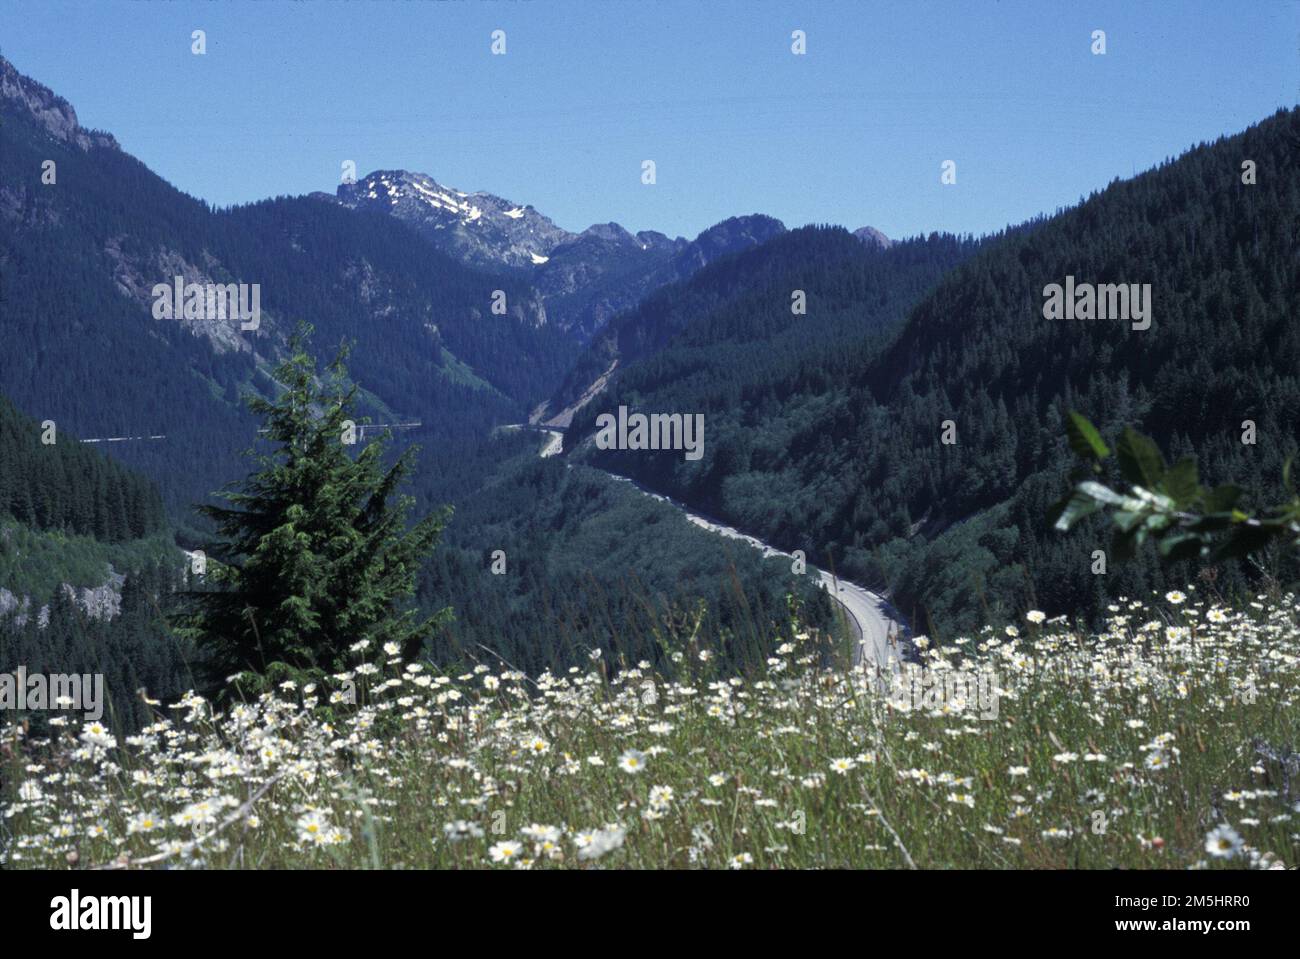 Montagnes à Sound Greenway - I-105 - Scenic White Flowers au-dessus de I-90. Les montagnes à Sound Greenway tournent autour d'un flanc de montagne boisé dans le col de Snoqualmie. Des fleurs blanches remplissent un champ au premier plan sous un ciel bleu brillant. Lieu: Snoqualmie Pass, Washington (47,444° N 121,677° O) Banque D'Images